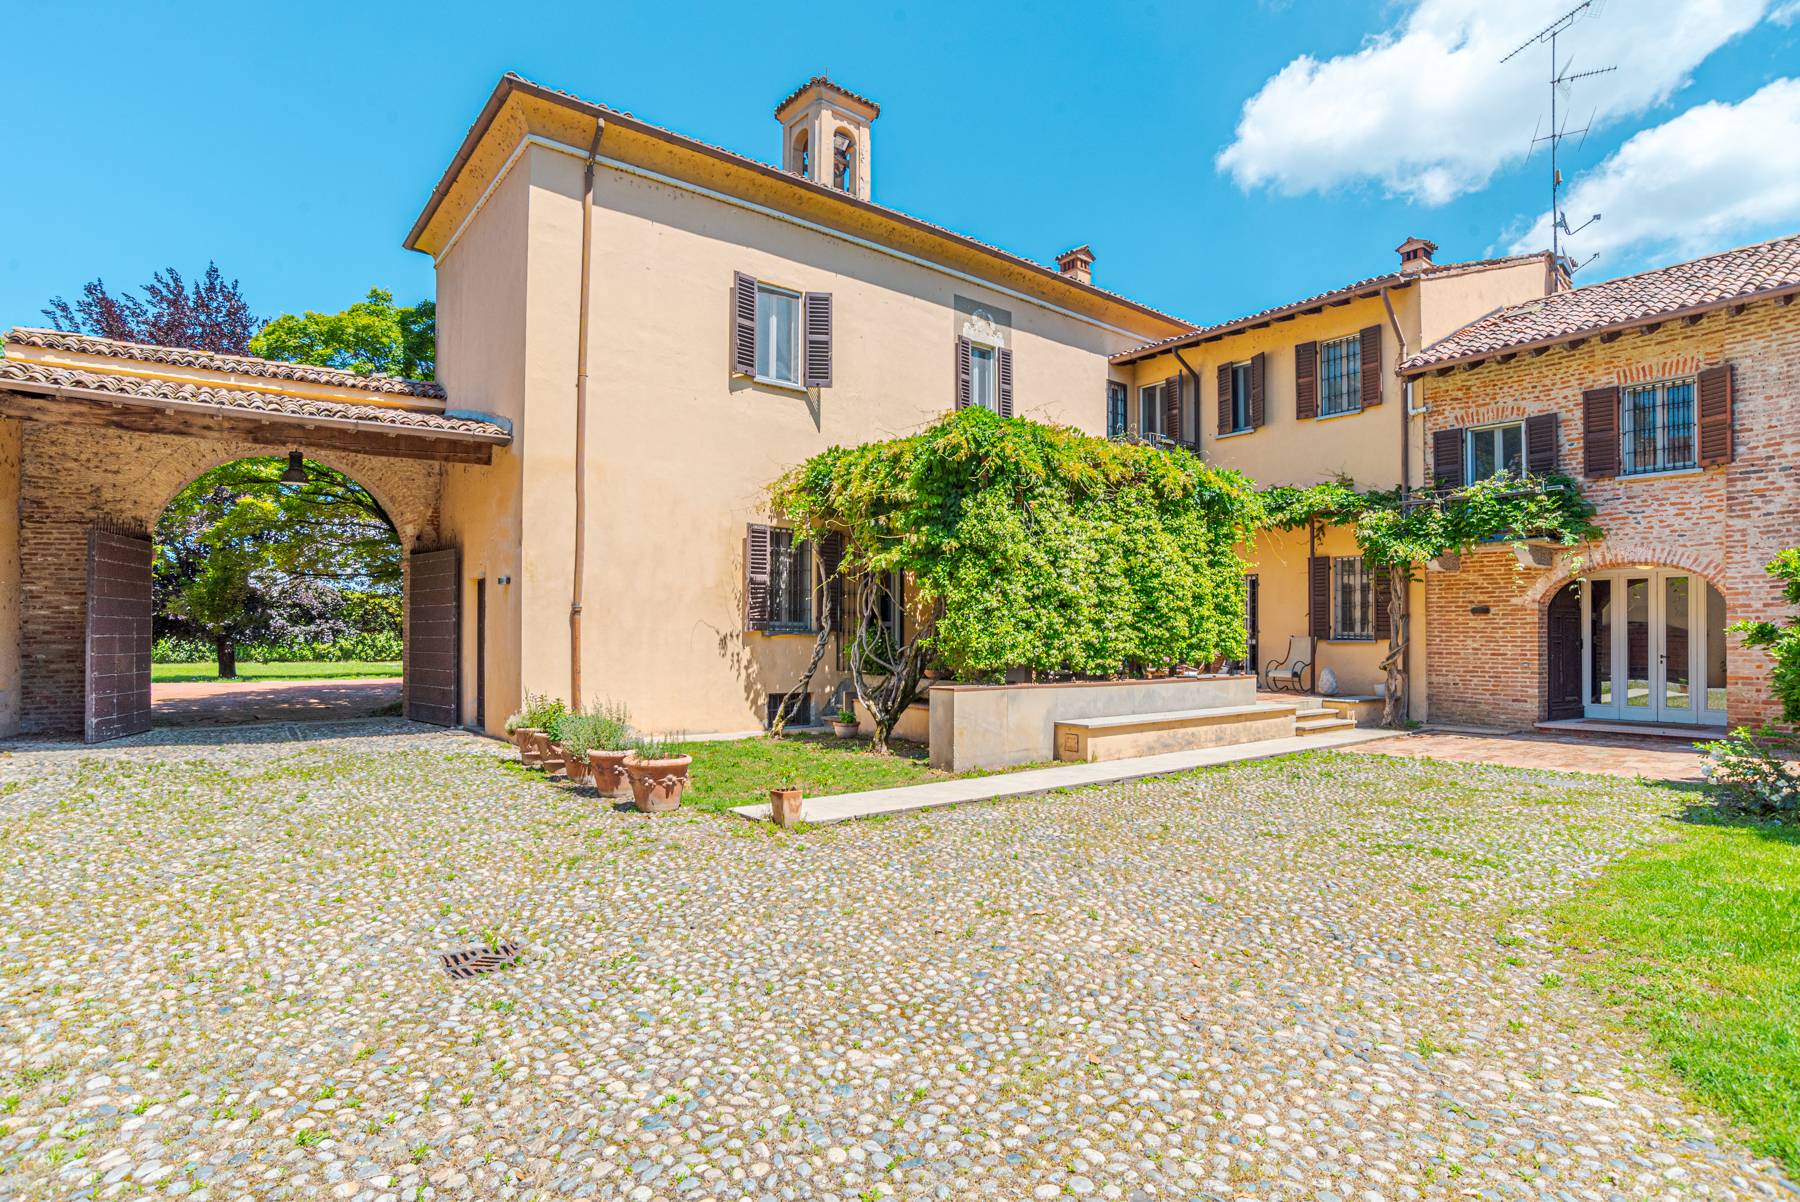 Villa in Vendita a Pavia: 5 locali, 1919 mq - Foto 2